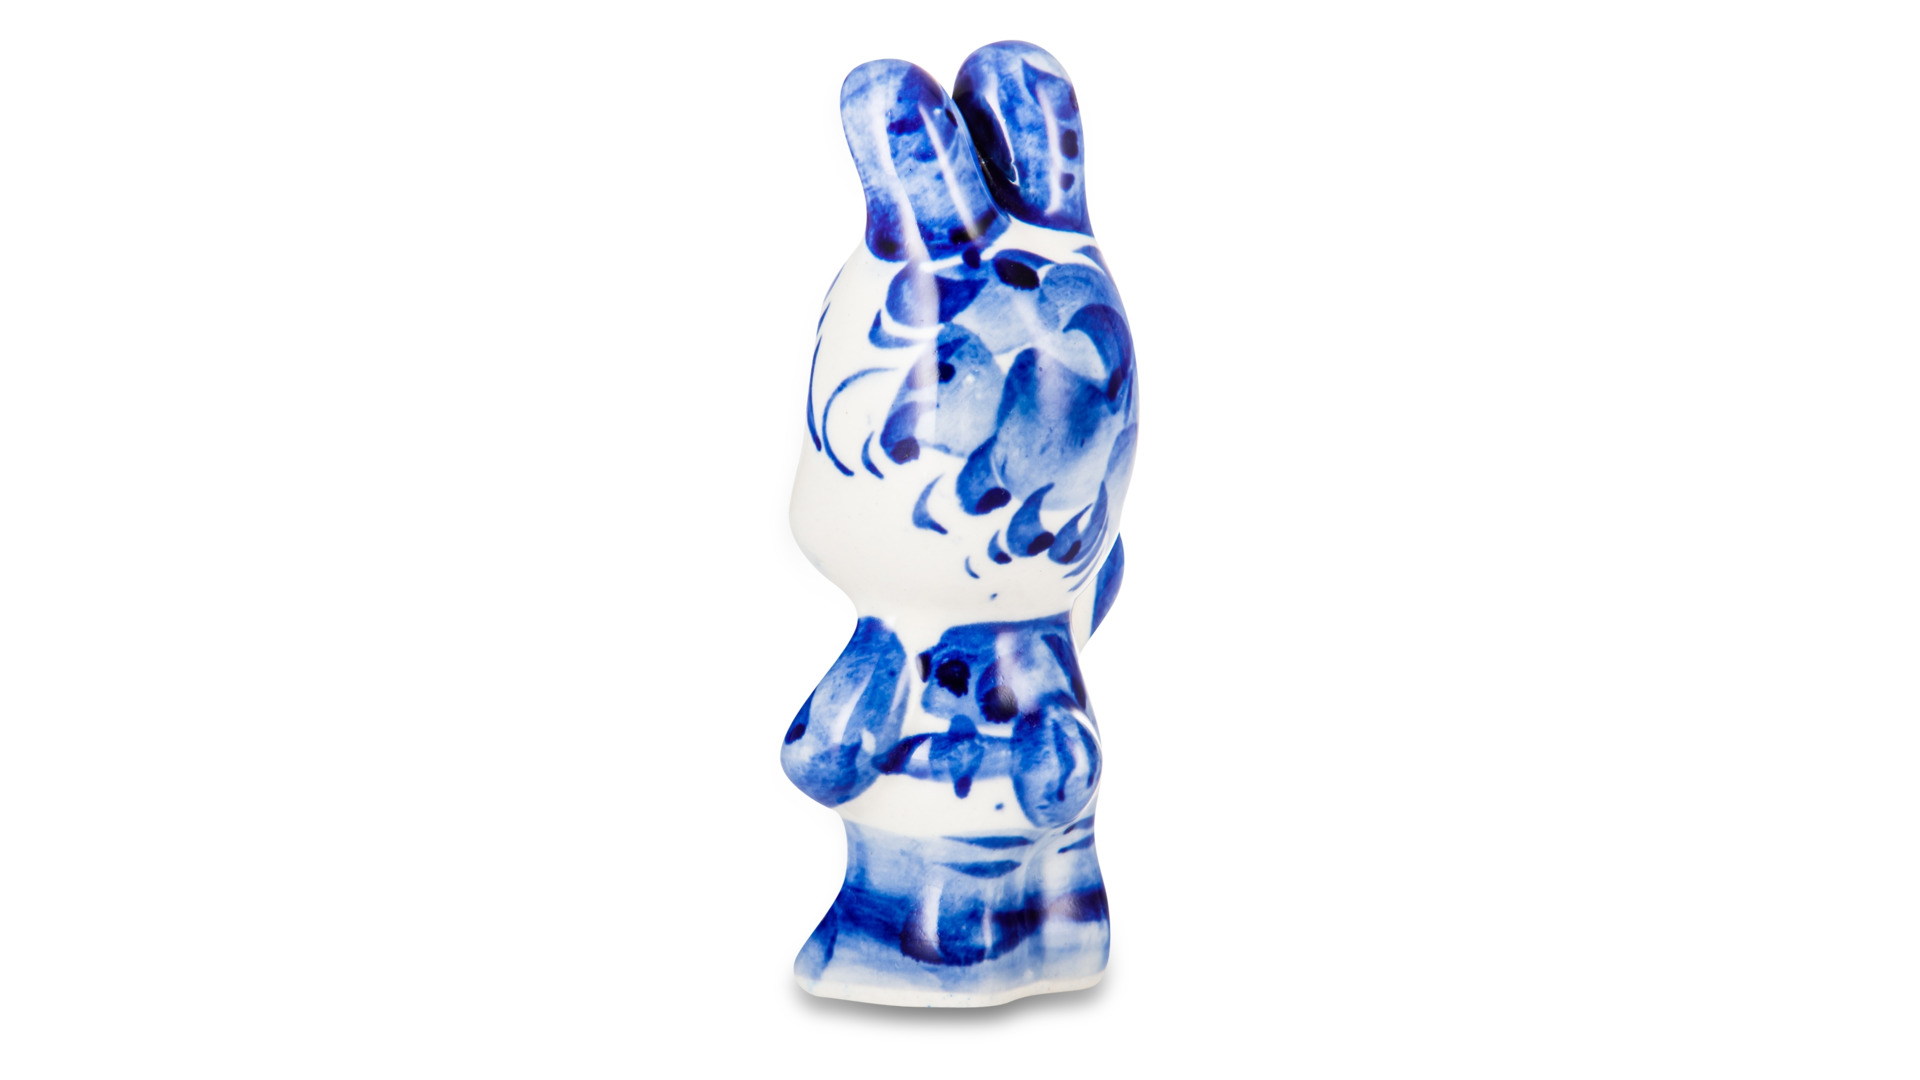 Скульптура Гжель Заяц 10,5 см, фарфор, бело-синий